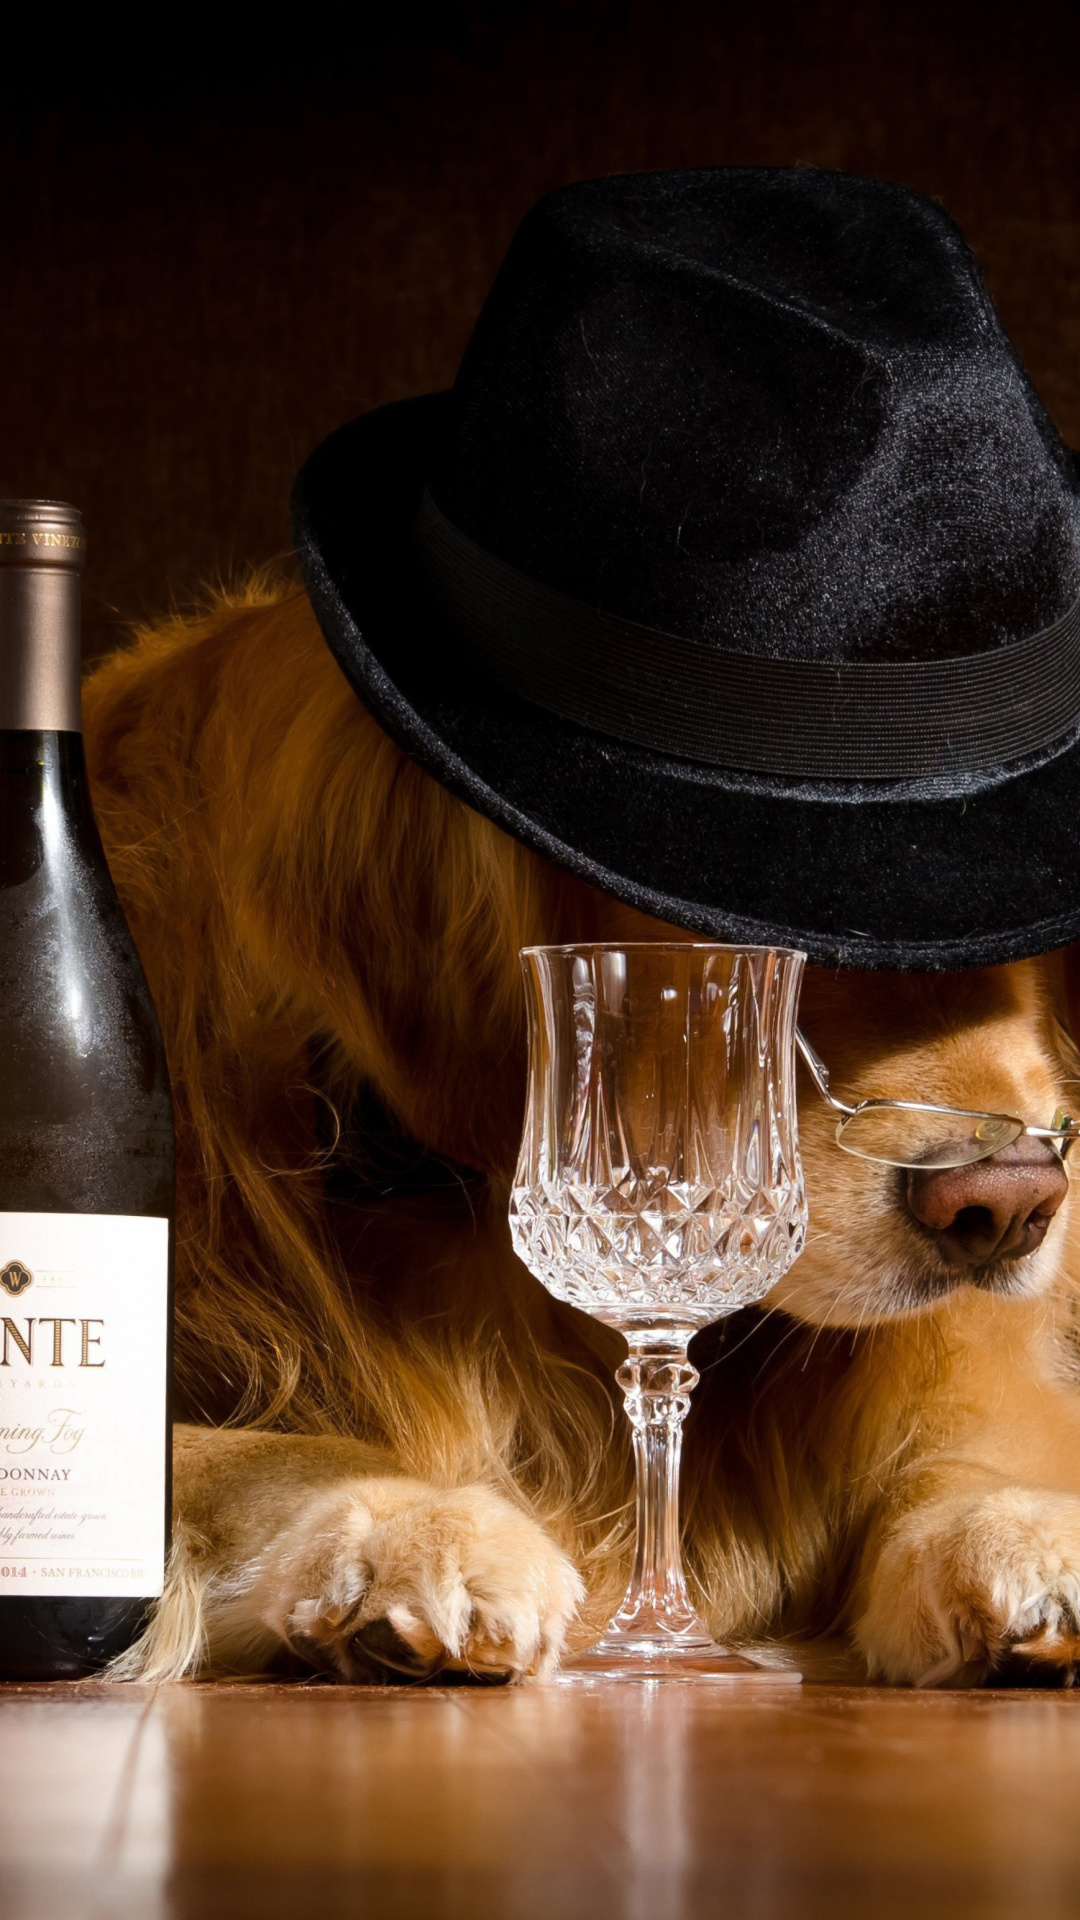 Обои Wine and Dog 1080x1920